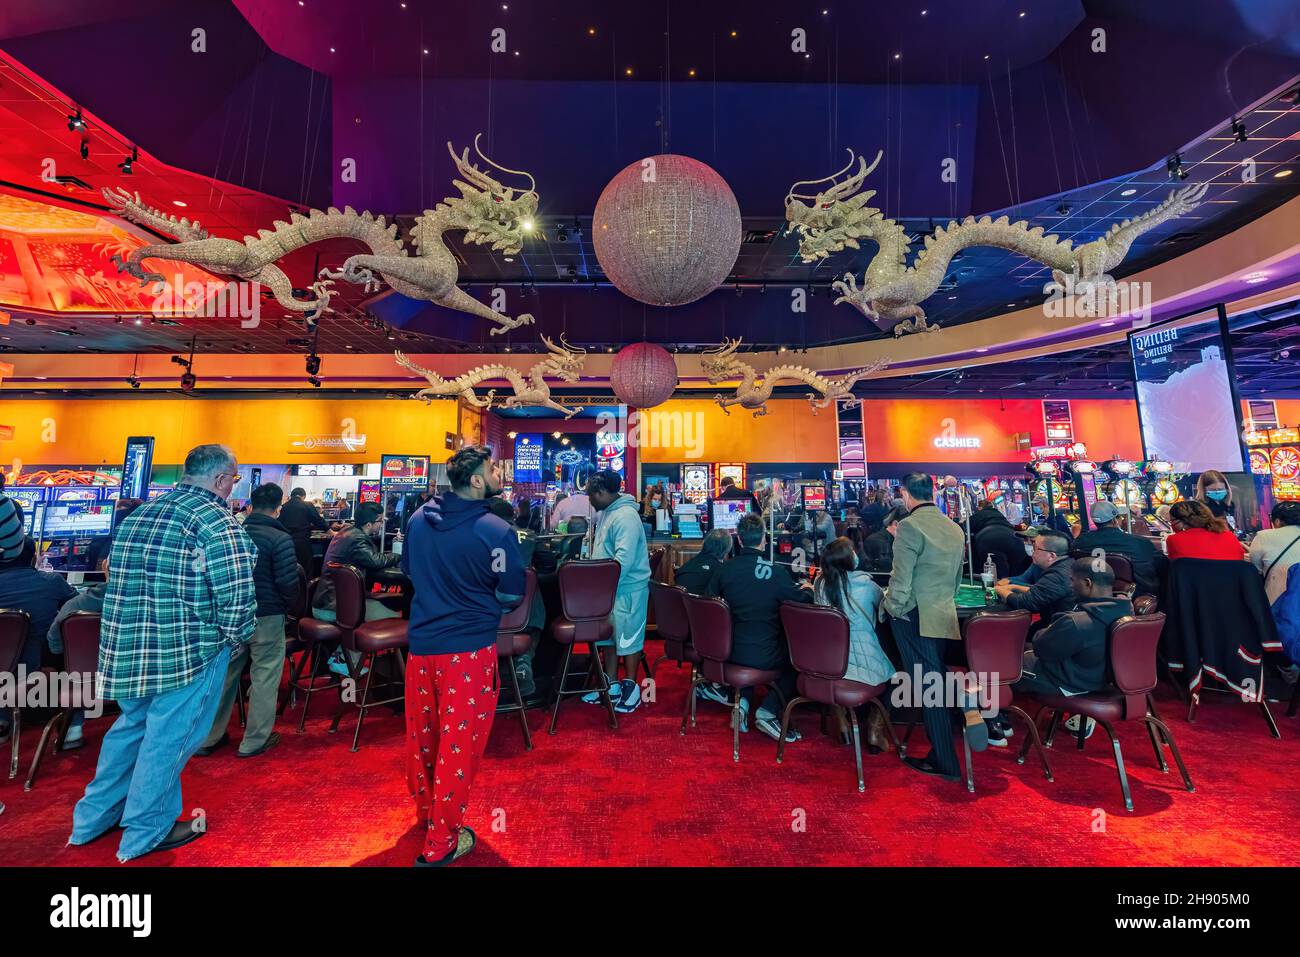 The World's Most Unusual casino